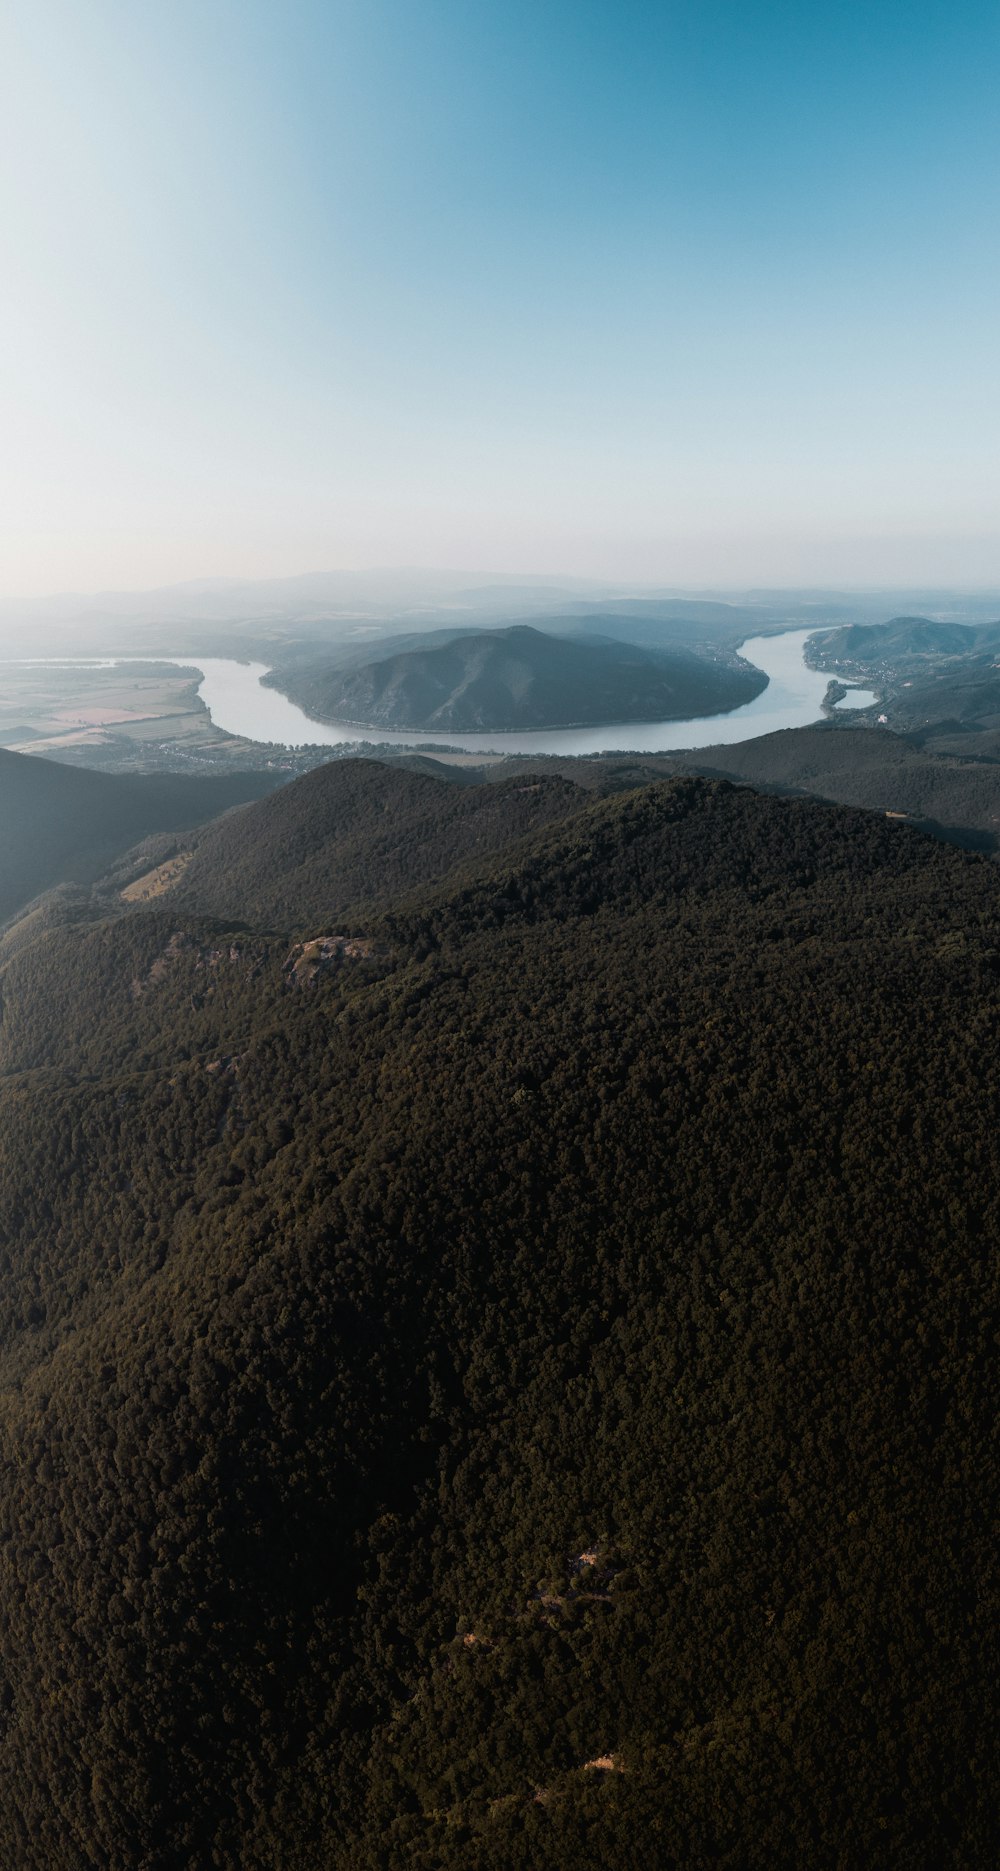 항공 사진으로 보는 푸른 언덕과 강